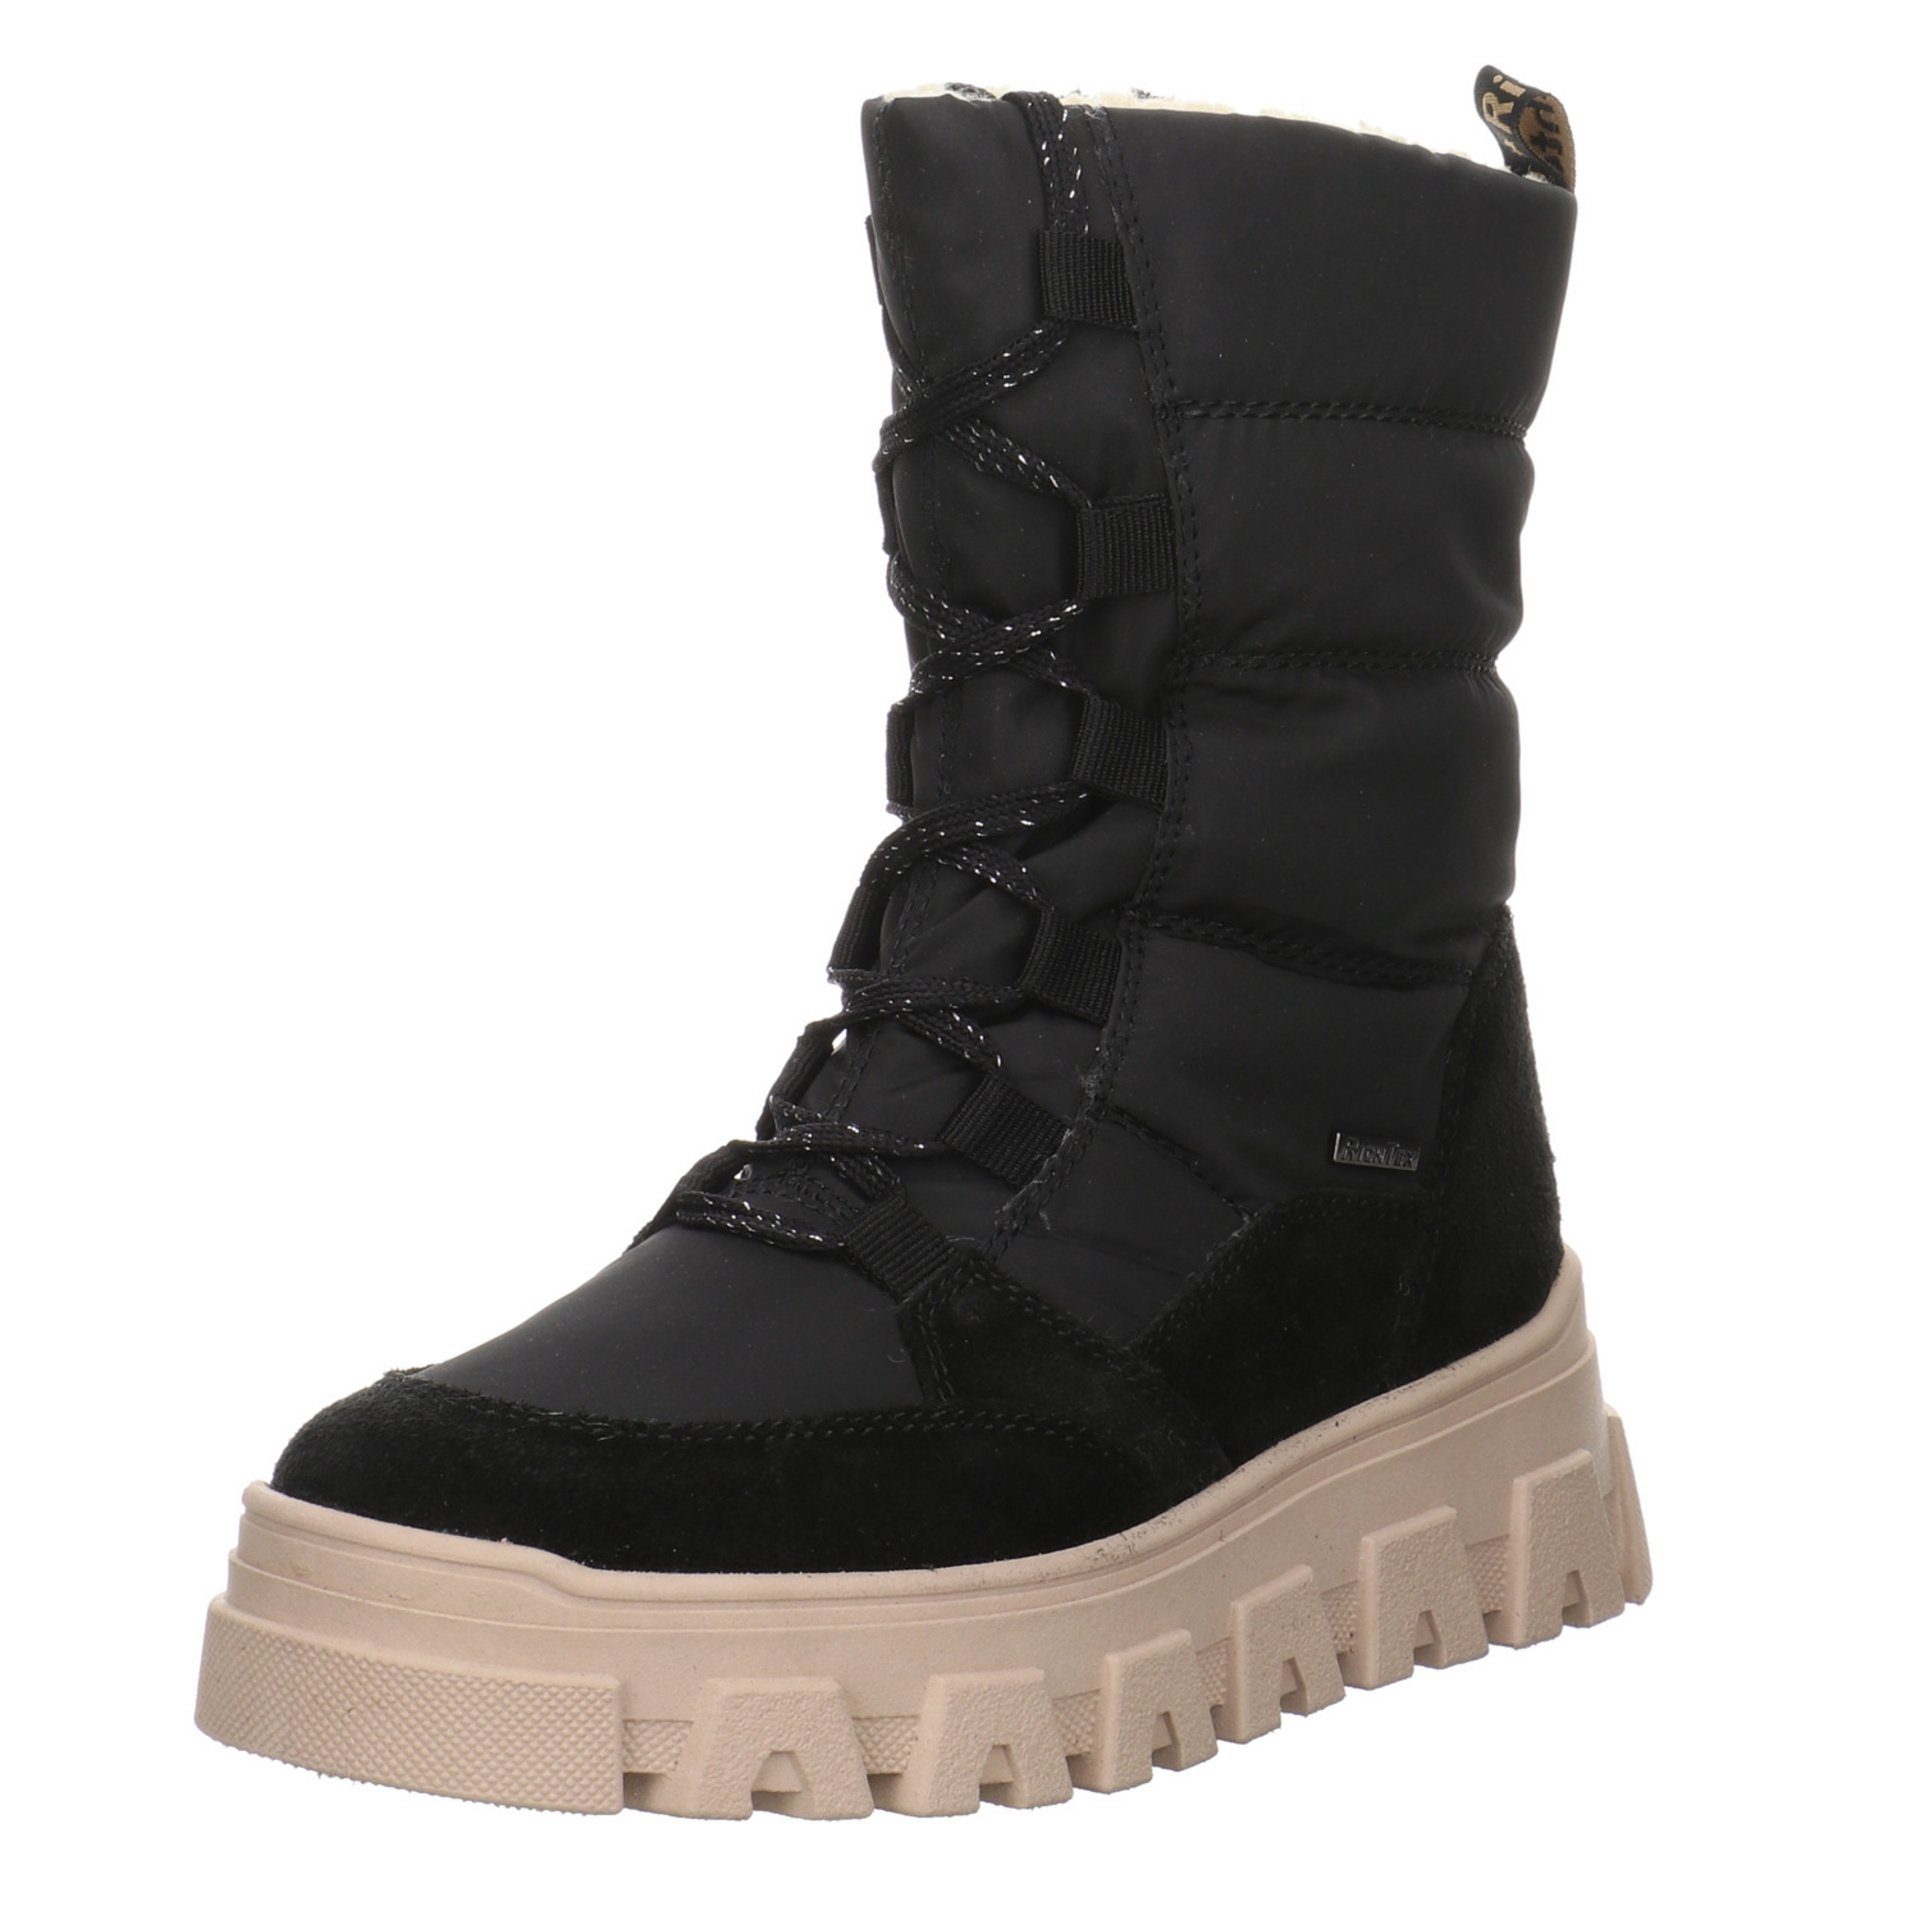 Richter Mädchen Stiefel Schuhe Boots Kinderschuhe Stiefelette Leder-/Textilkombination schwarz